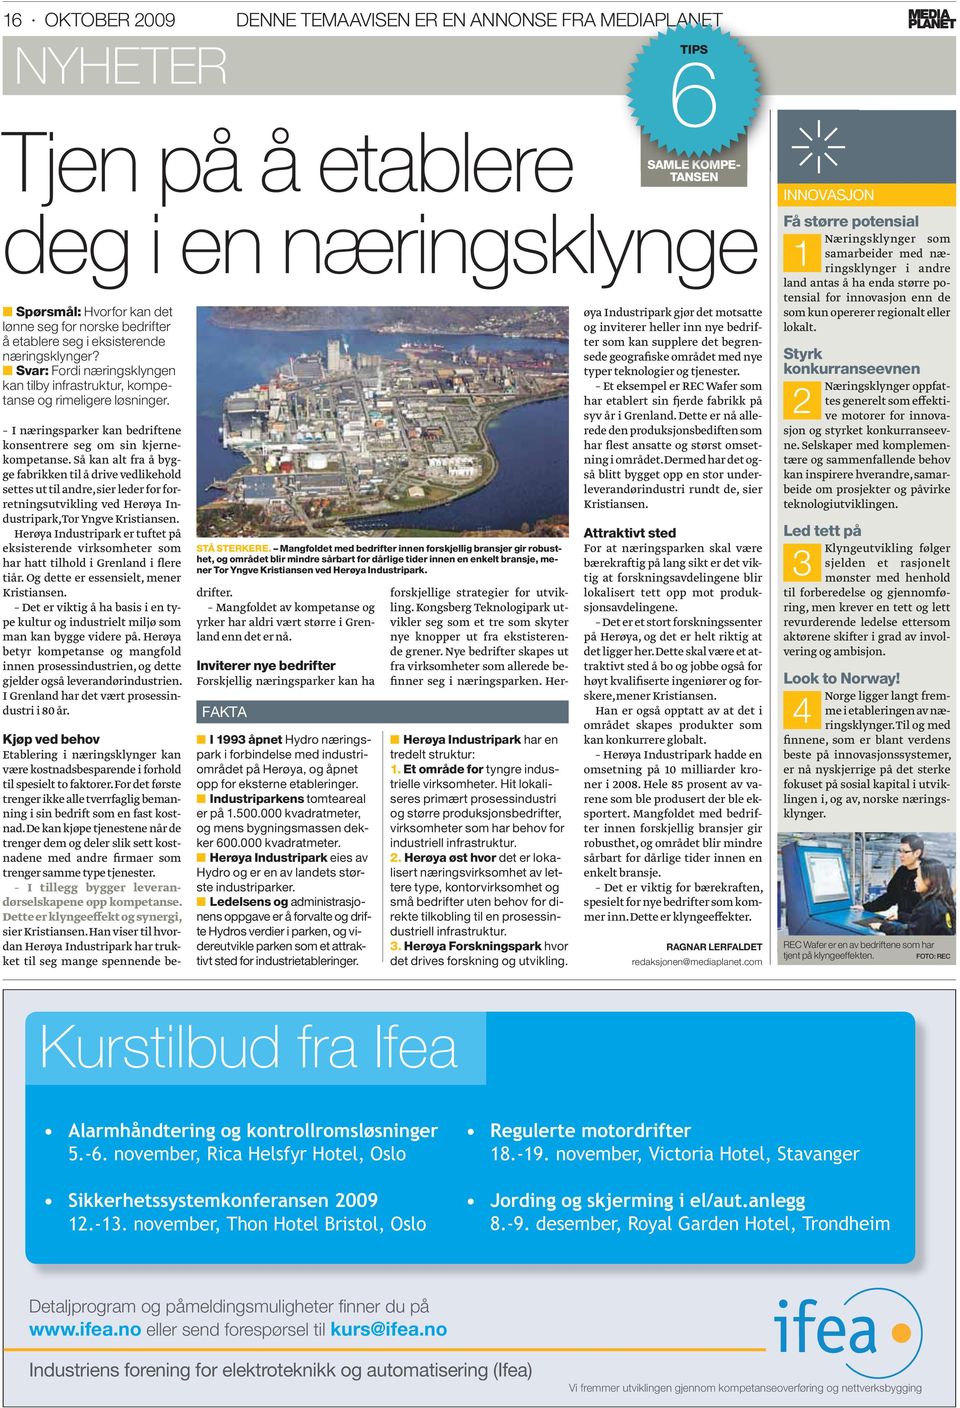 Så kan alt fra å bygge fabrikken til å drive vedlikehold settes ut til andre, sier leder for forretningsutvikling ved Herøya Industripark, Tor Yngve Kristiansen.